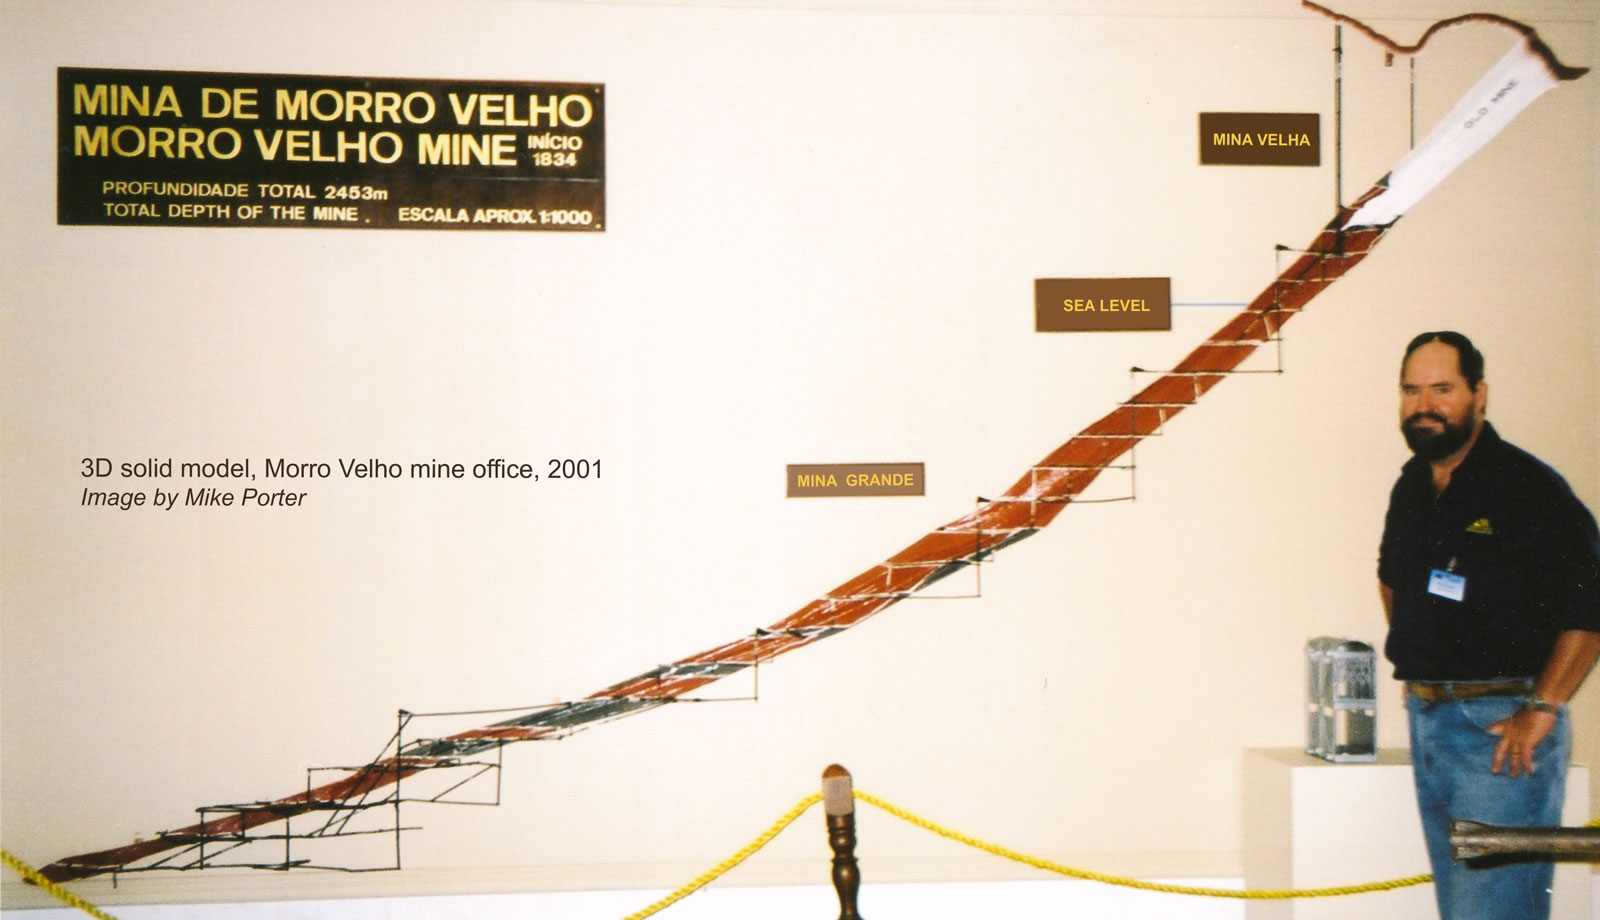 Block model of the Morro Velho mine